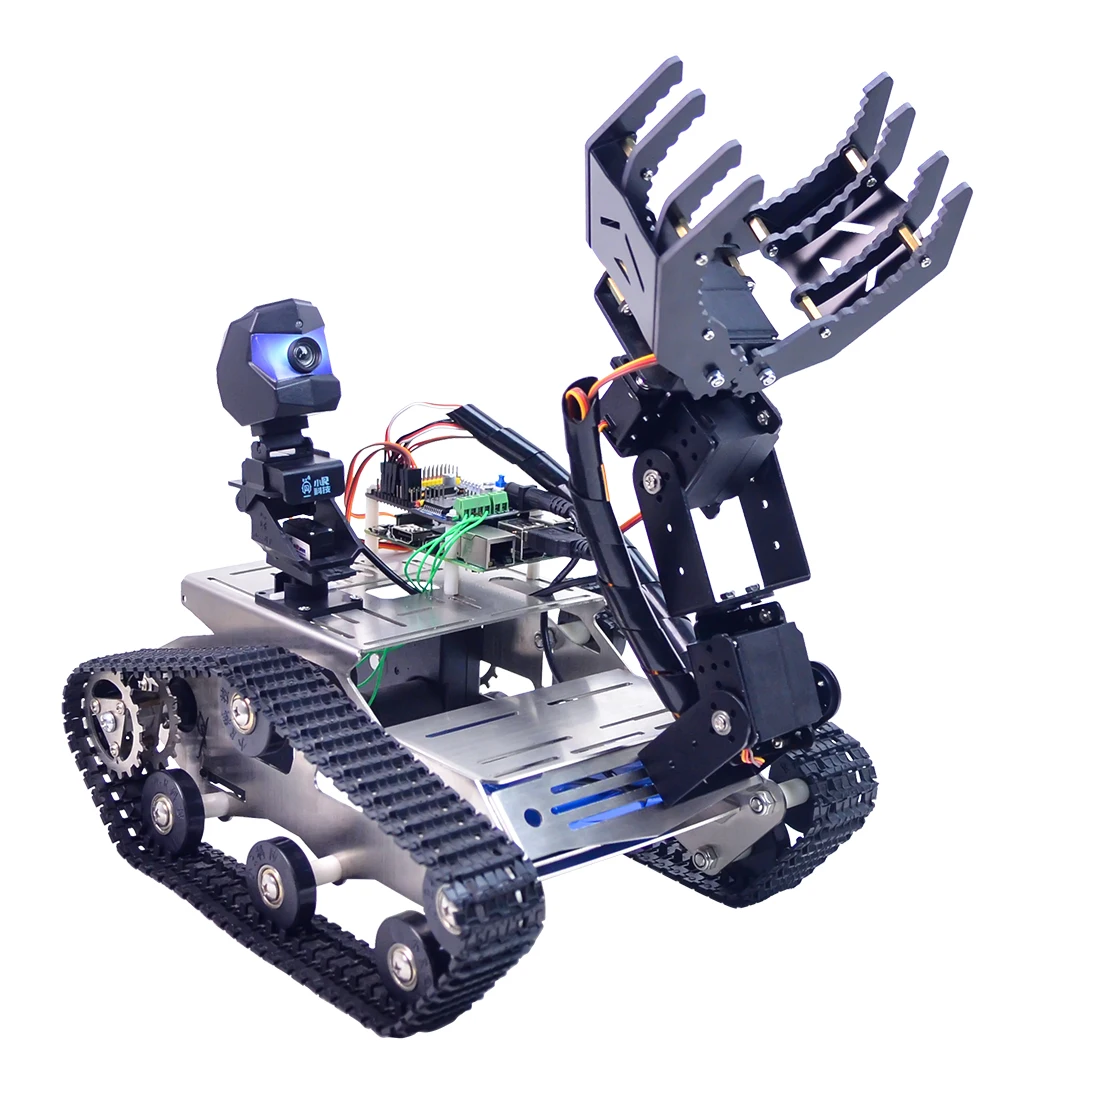 Программируемый TH WiFi FPV Танк робот автомобильный комплект с рукояткой для Arduino мега-стандартная версия большой коготь